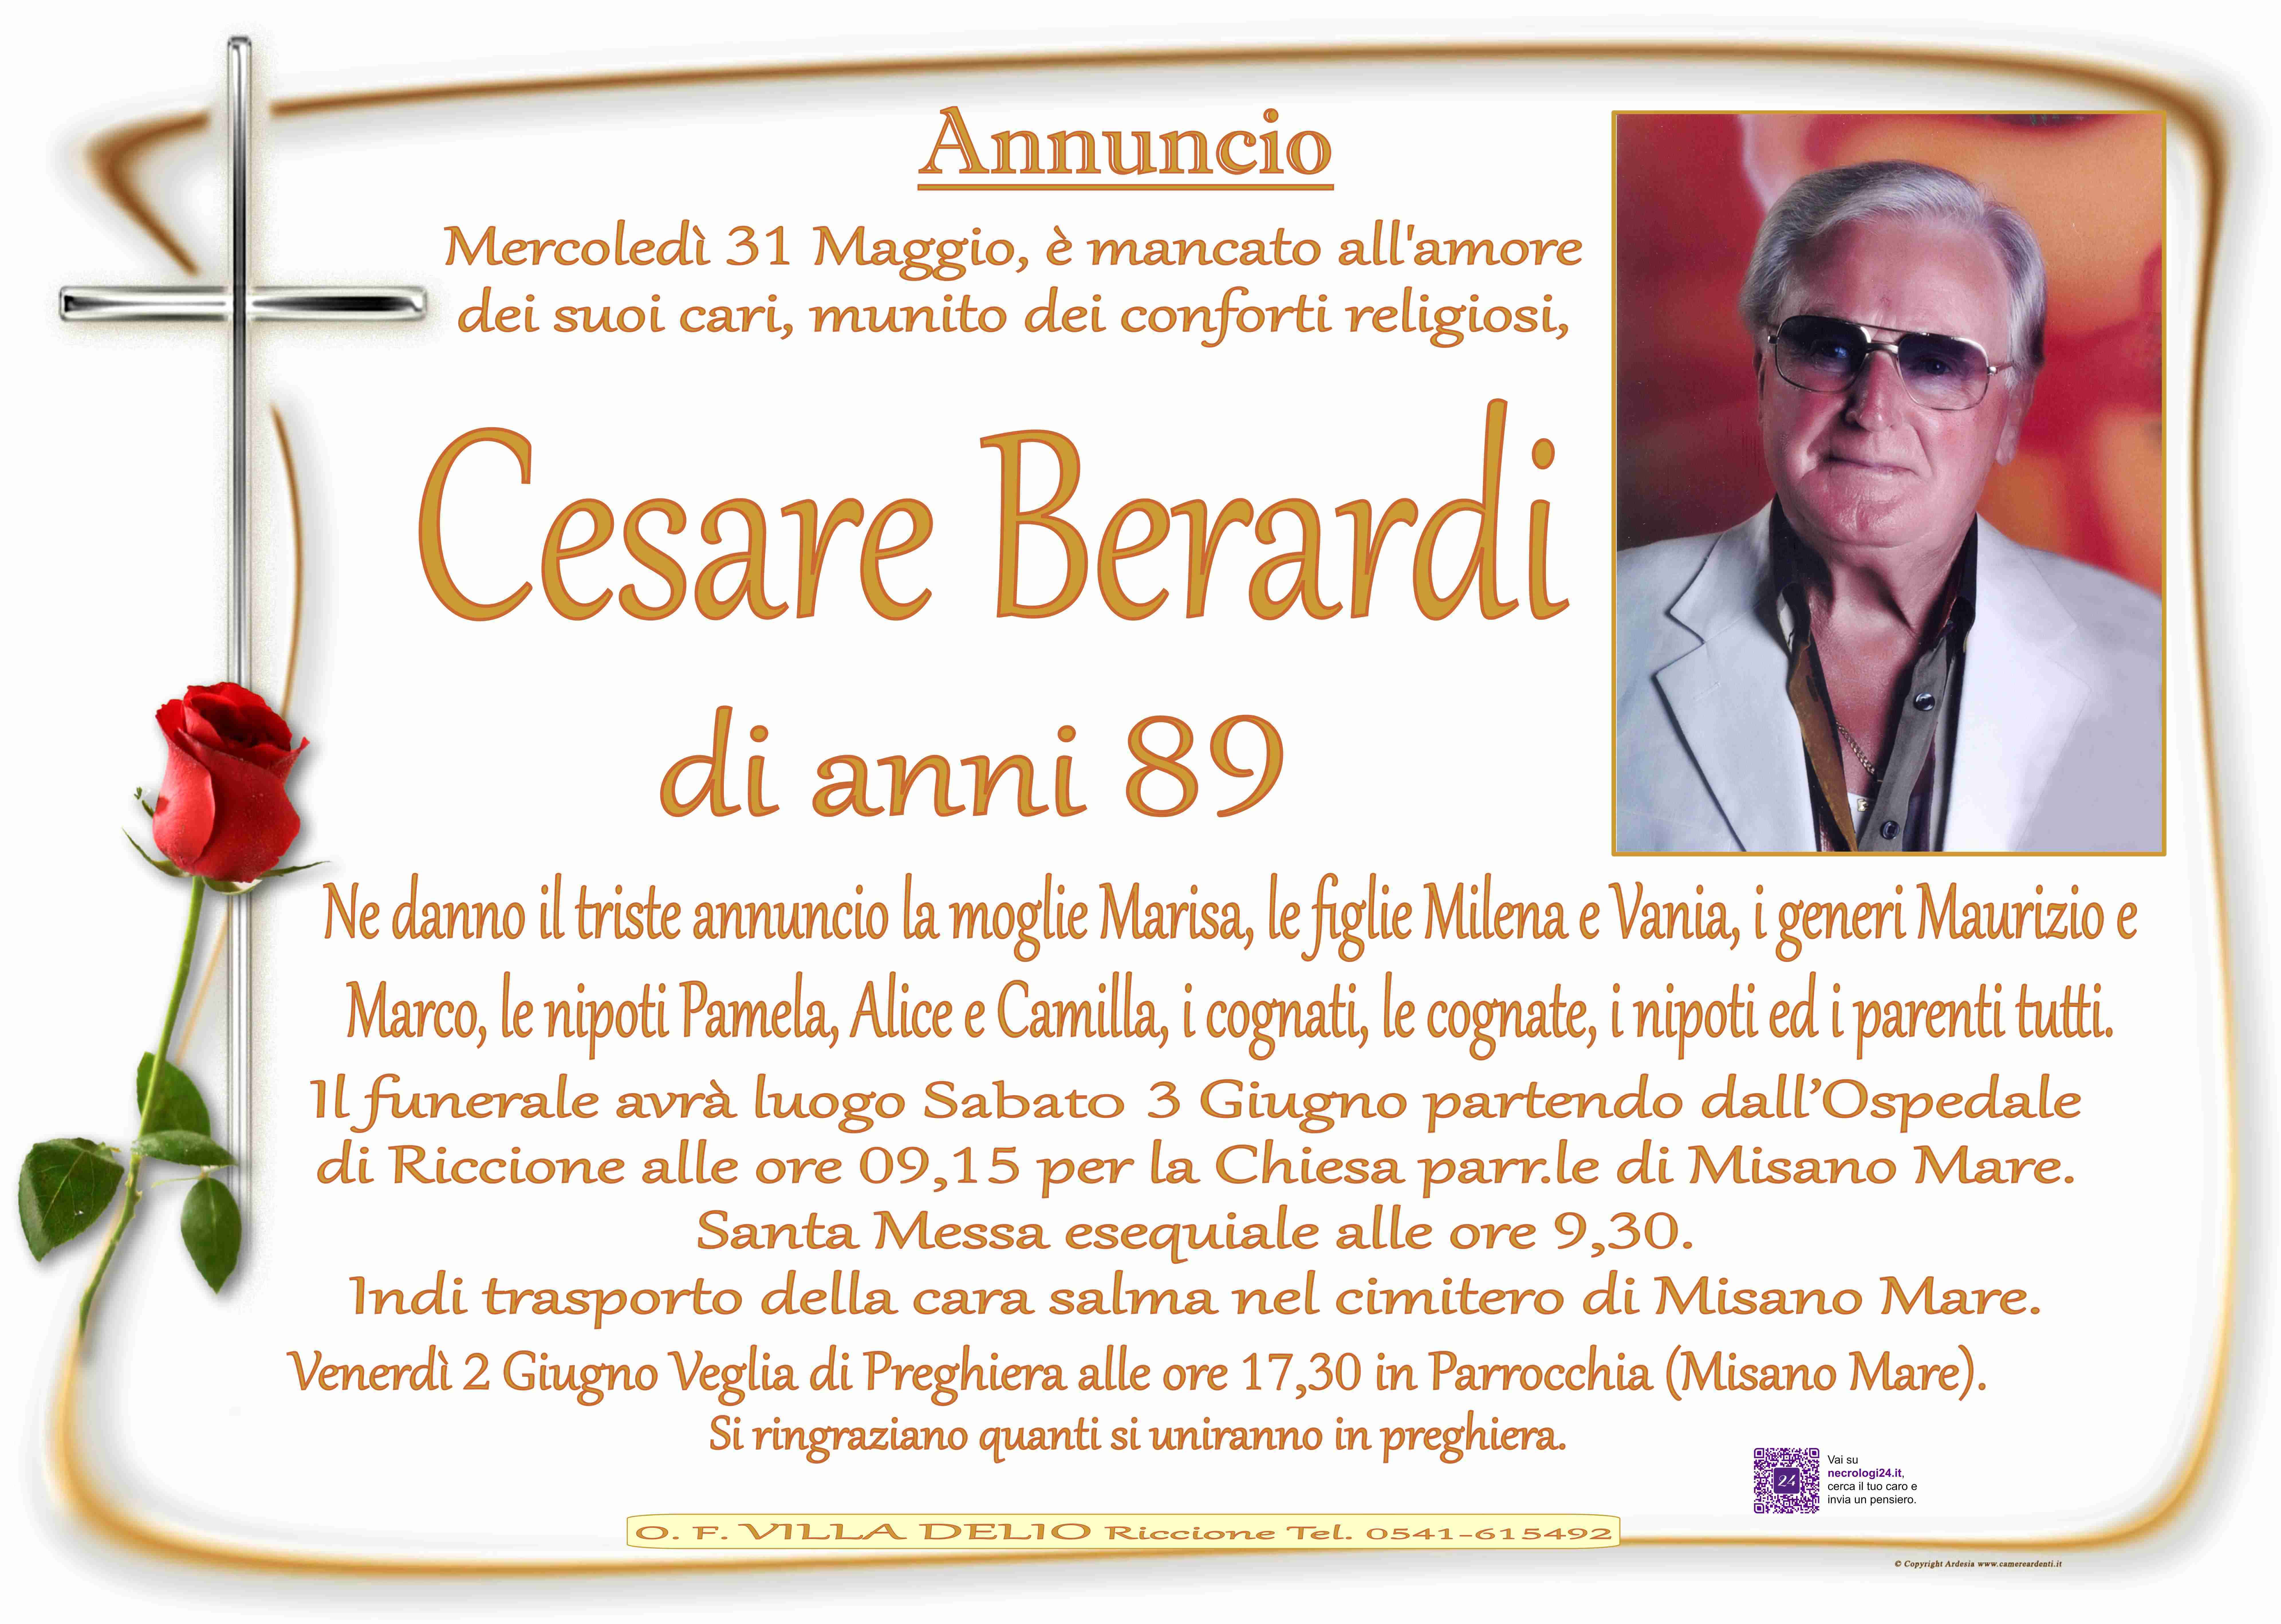 Cesare Berardi